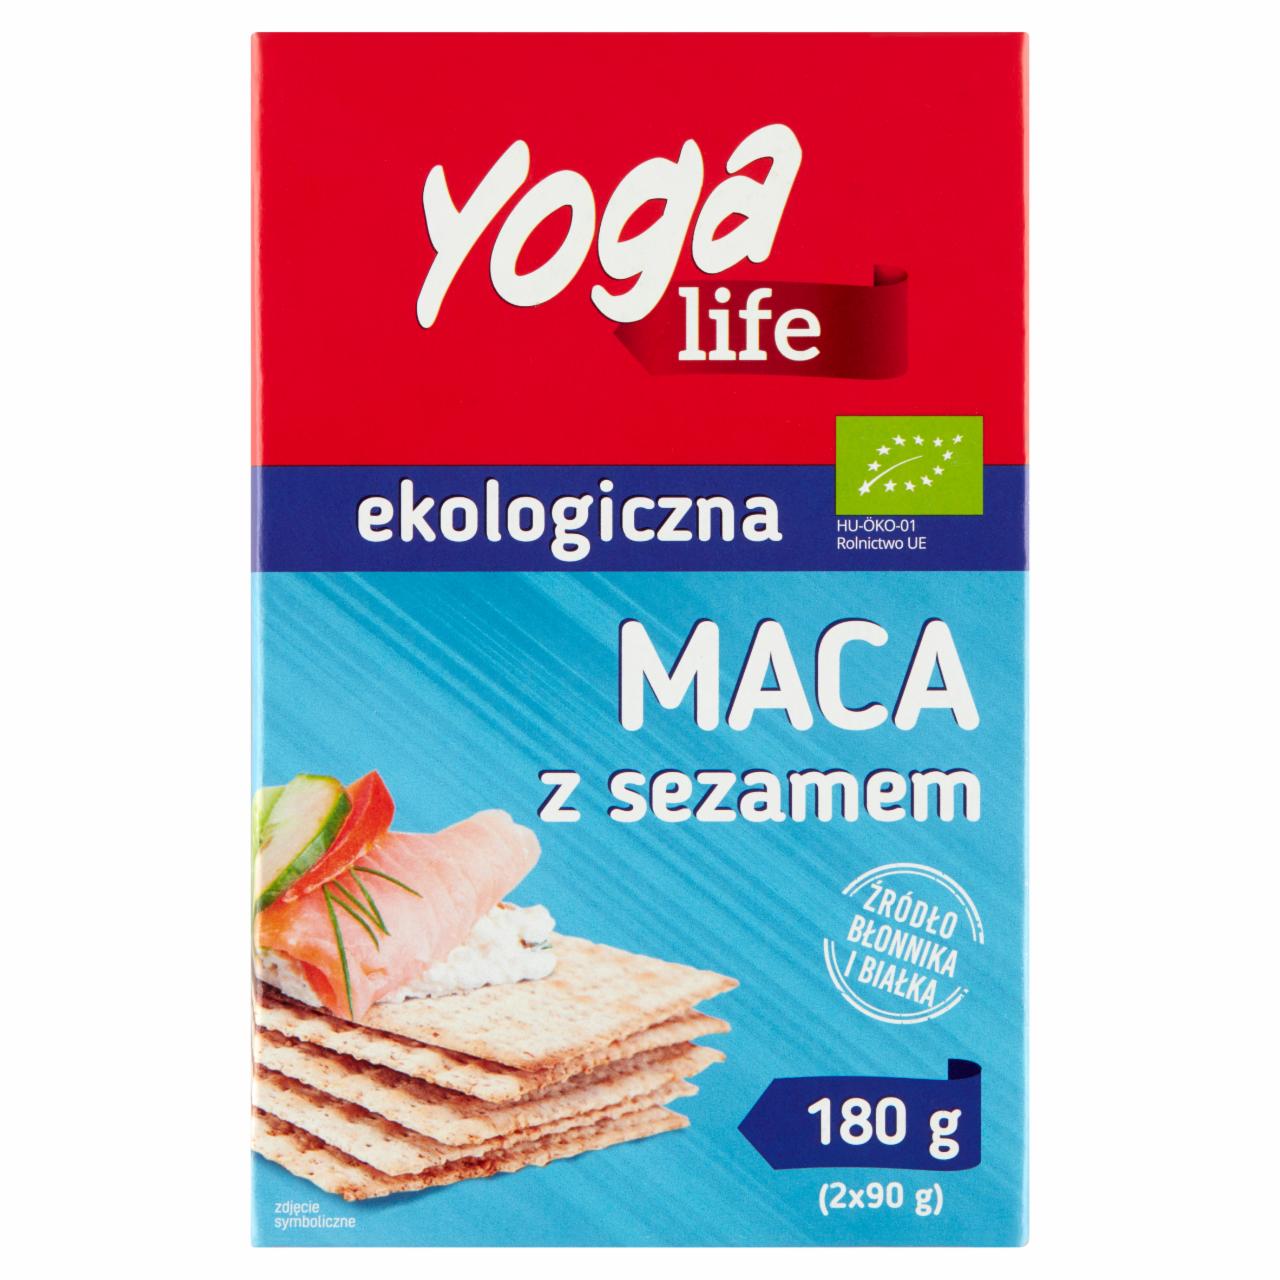 Zdjęcia - Yoga Life Maca z sezamem ekologiczna 180 g (2 x 90 g)